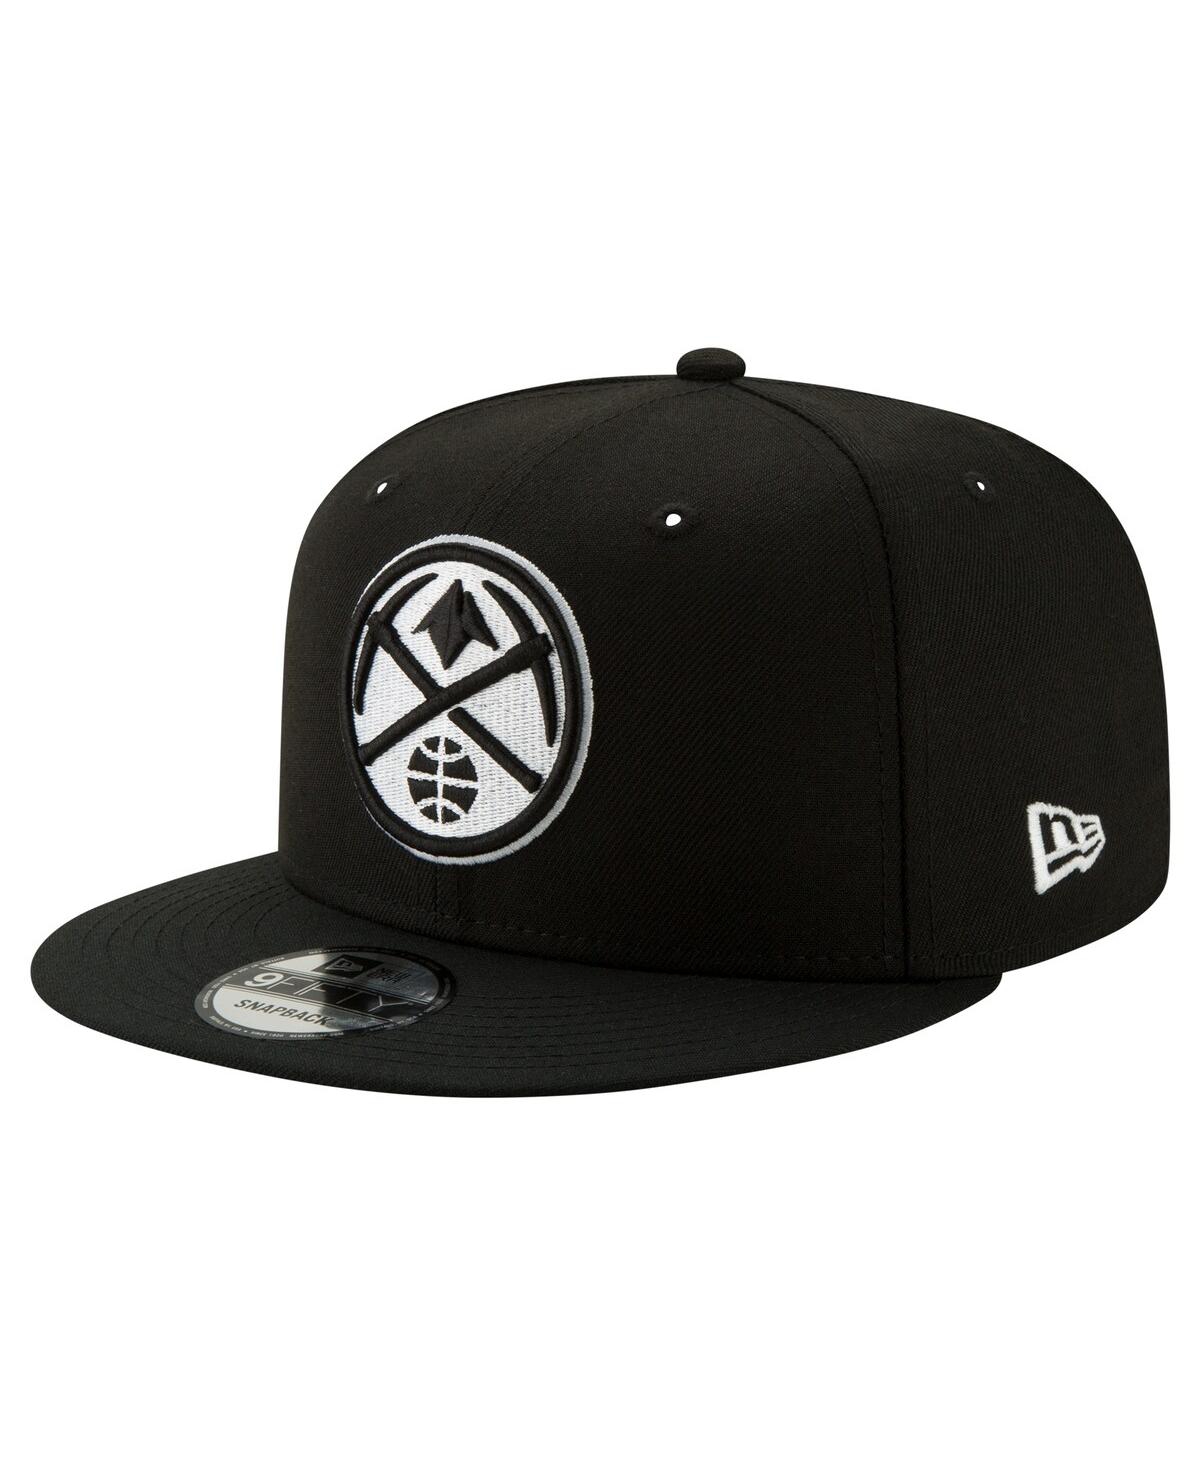 Men's Denver Nuggets Black White 9fifty Snapback Hat - Black